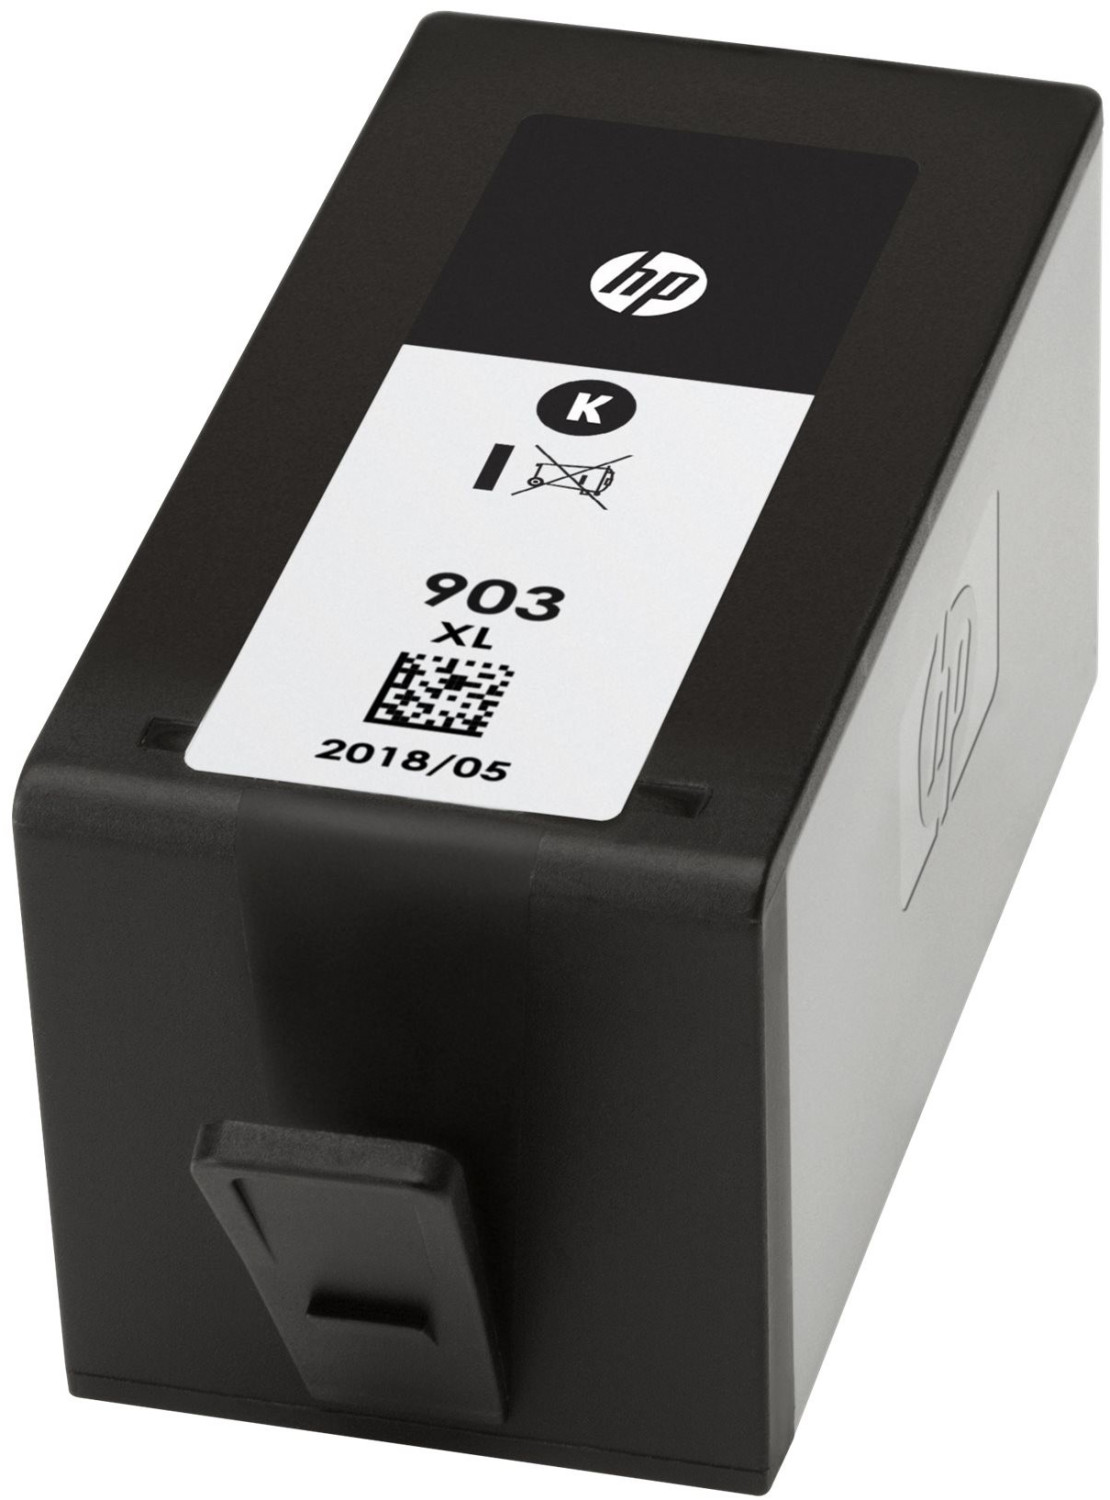 Cartouche d'encre HP 903XL (T6M15AE) noir - cartouche d'encre compatible HP  - GRANDE CAPACITE